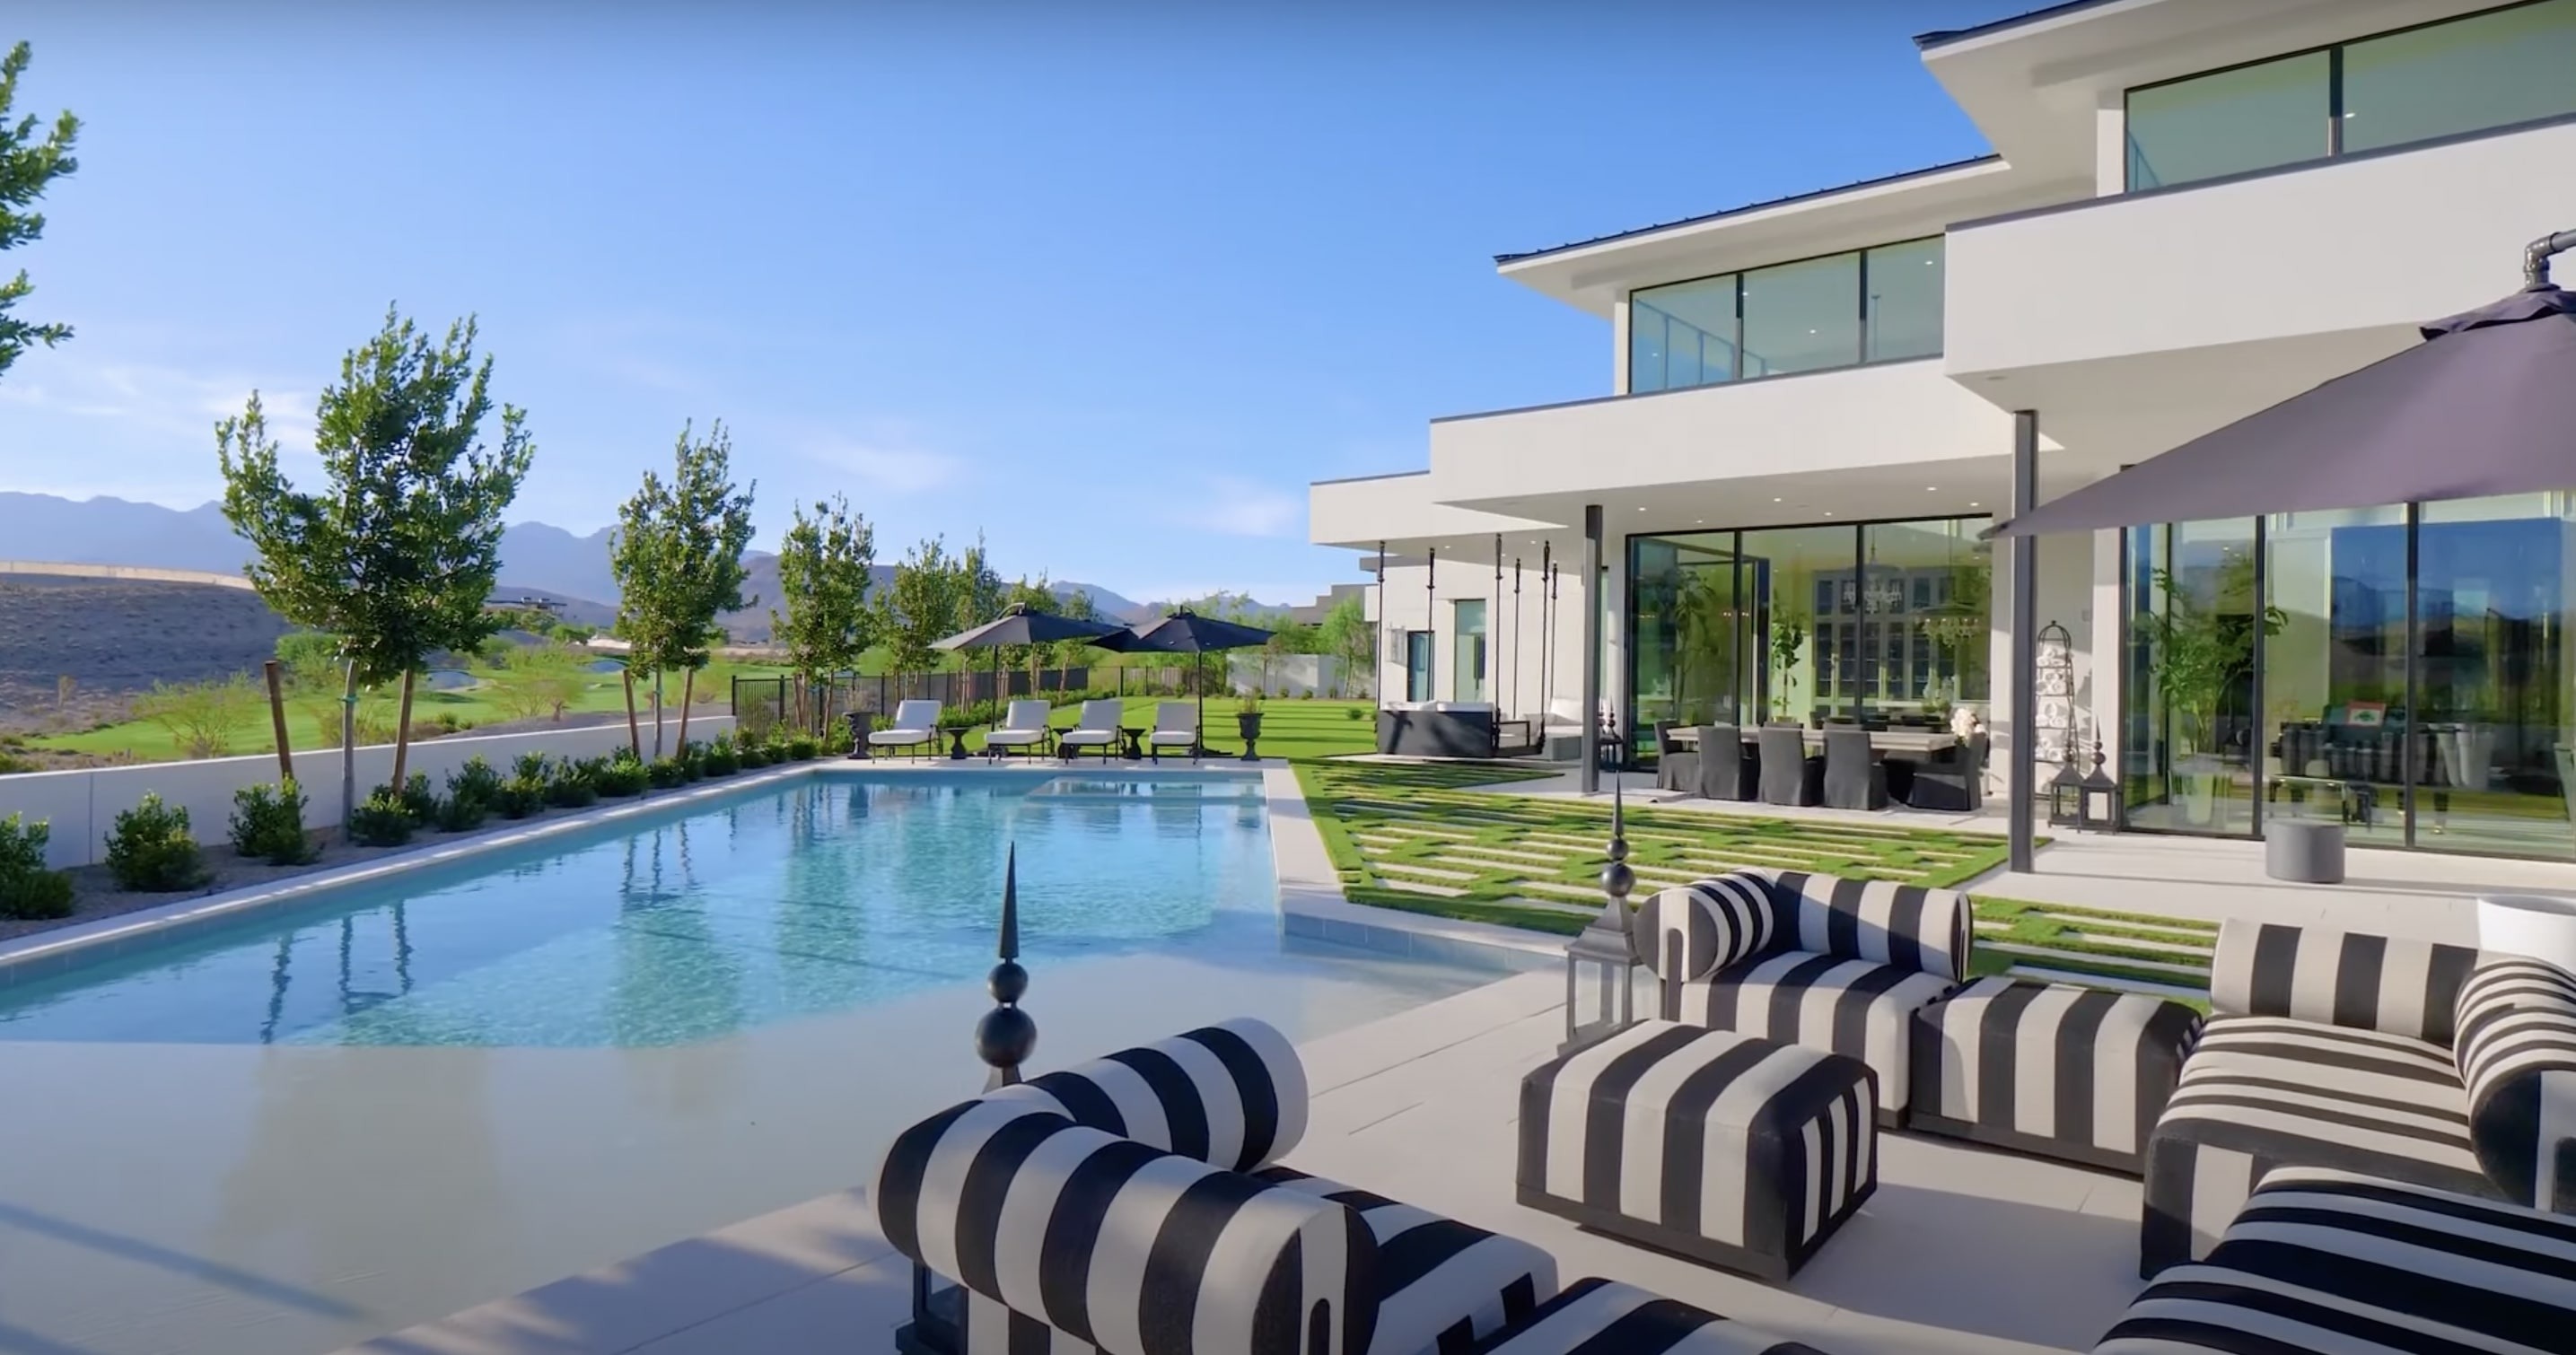 Maison de Mark Wahlberg et Rhea Durham vue extérieure de leur piscine à Las Vegas, Nevada | Source : YouTube@PropertyReview